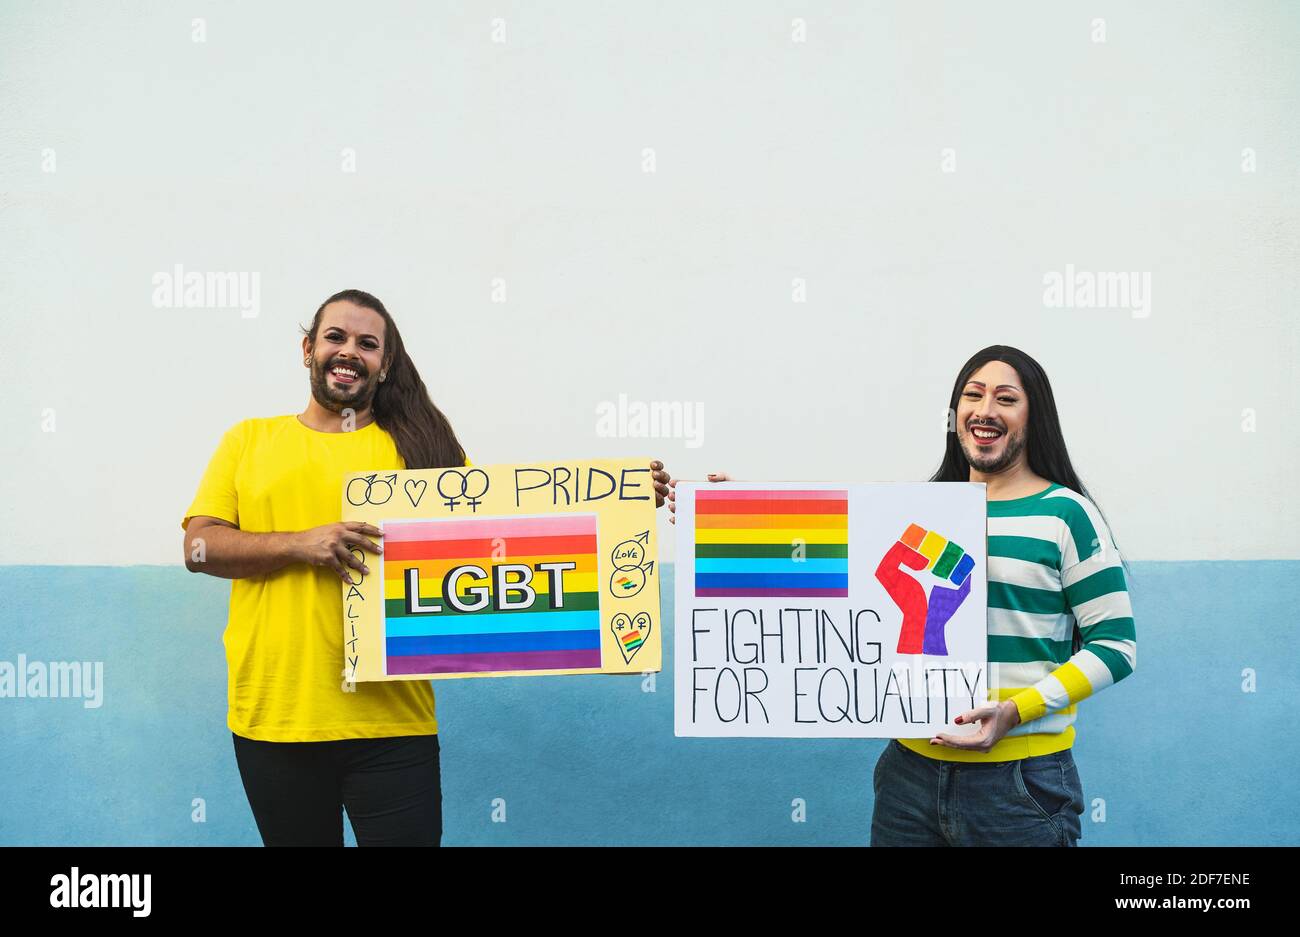 Felices activistas de la reina de arrastre que se divierten durante el desfile de orgullo gay - concepto de movimiento social LGBT Foto de stock